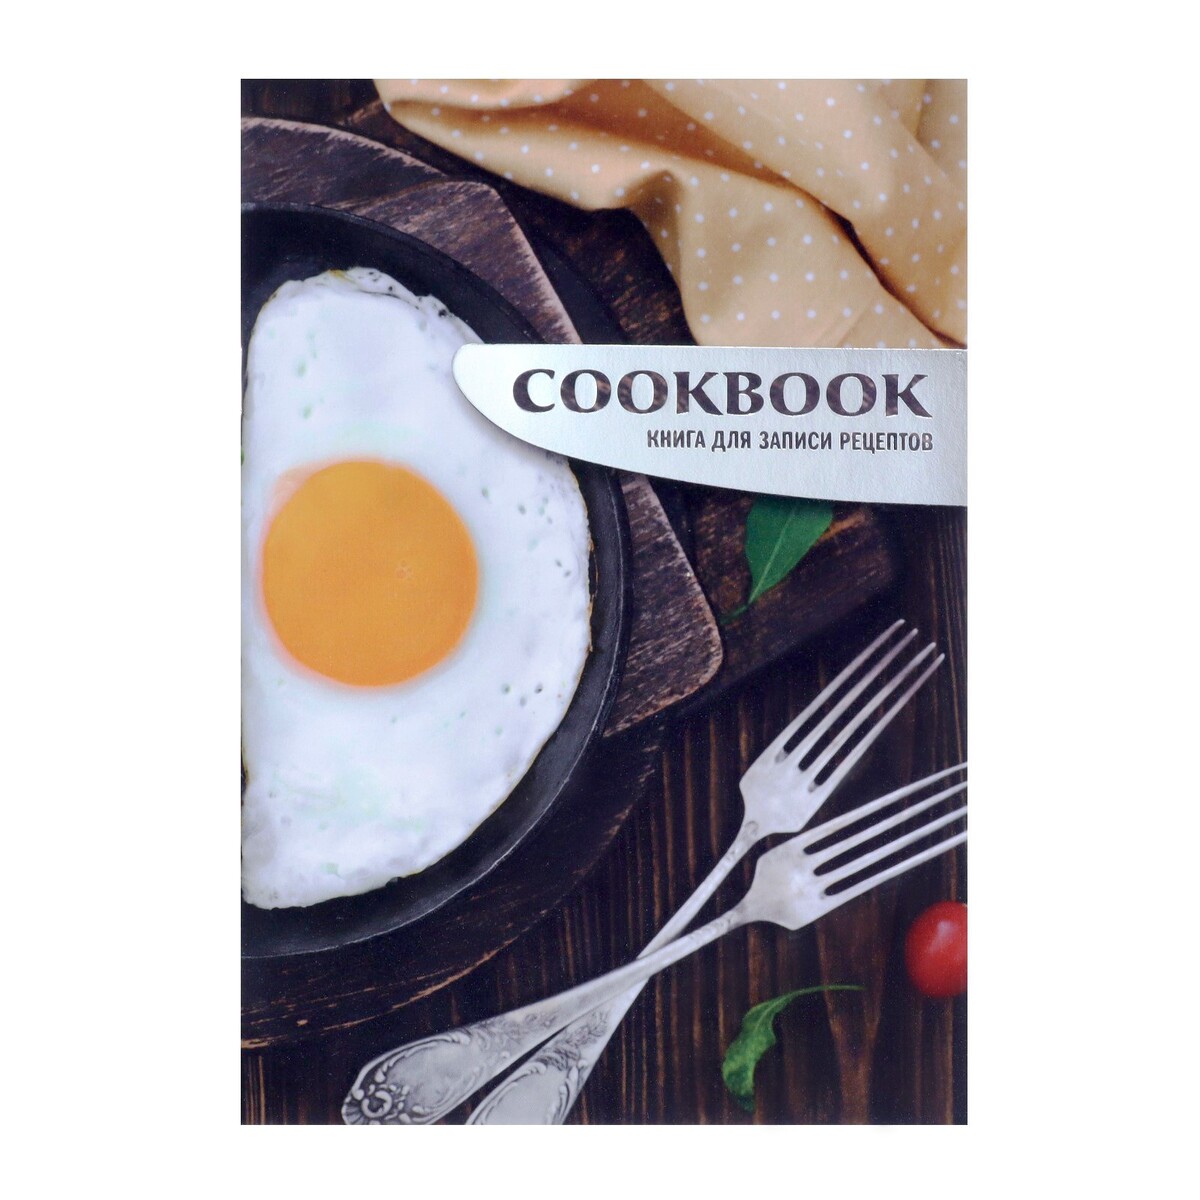 Книга для записи кулинарных рецептов а5, 48 листов завтрак ужин и обед 100 кулинарных шедевров рецептов маленьких хитростей и вариаций на тему я